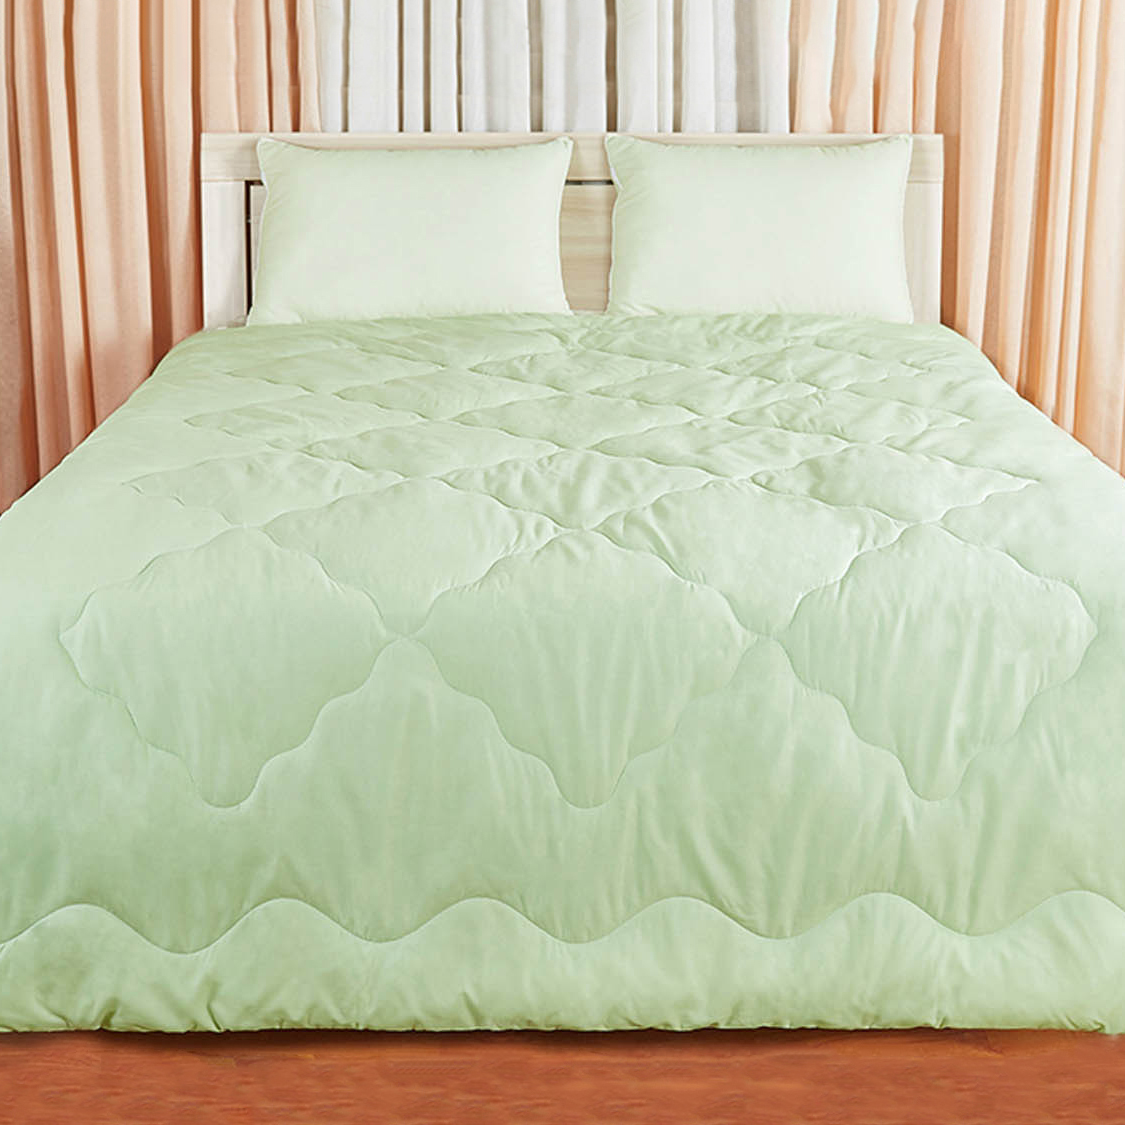 Одеяло Debby Цвет: Салатовый (140х205 см), размер 140х205 см pdo319274 Одеяло Debby Цвет: Салатовый (140х205 см) - фото 1